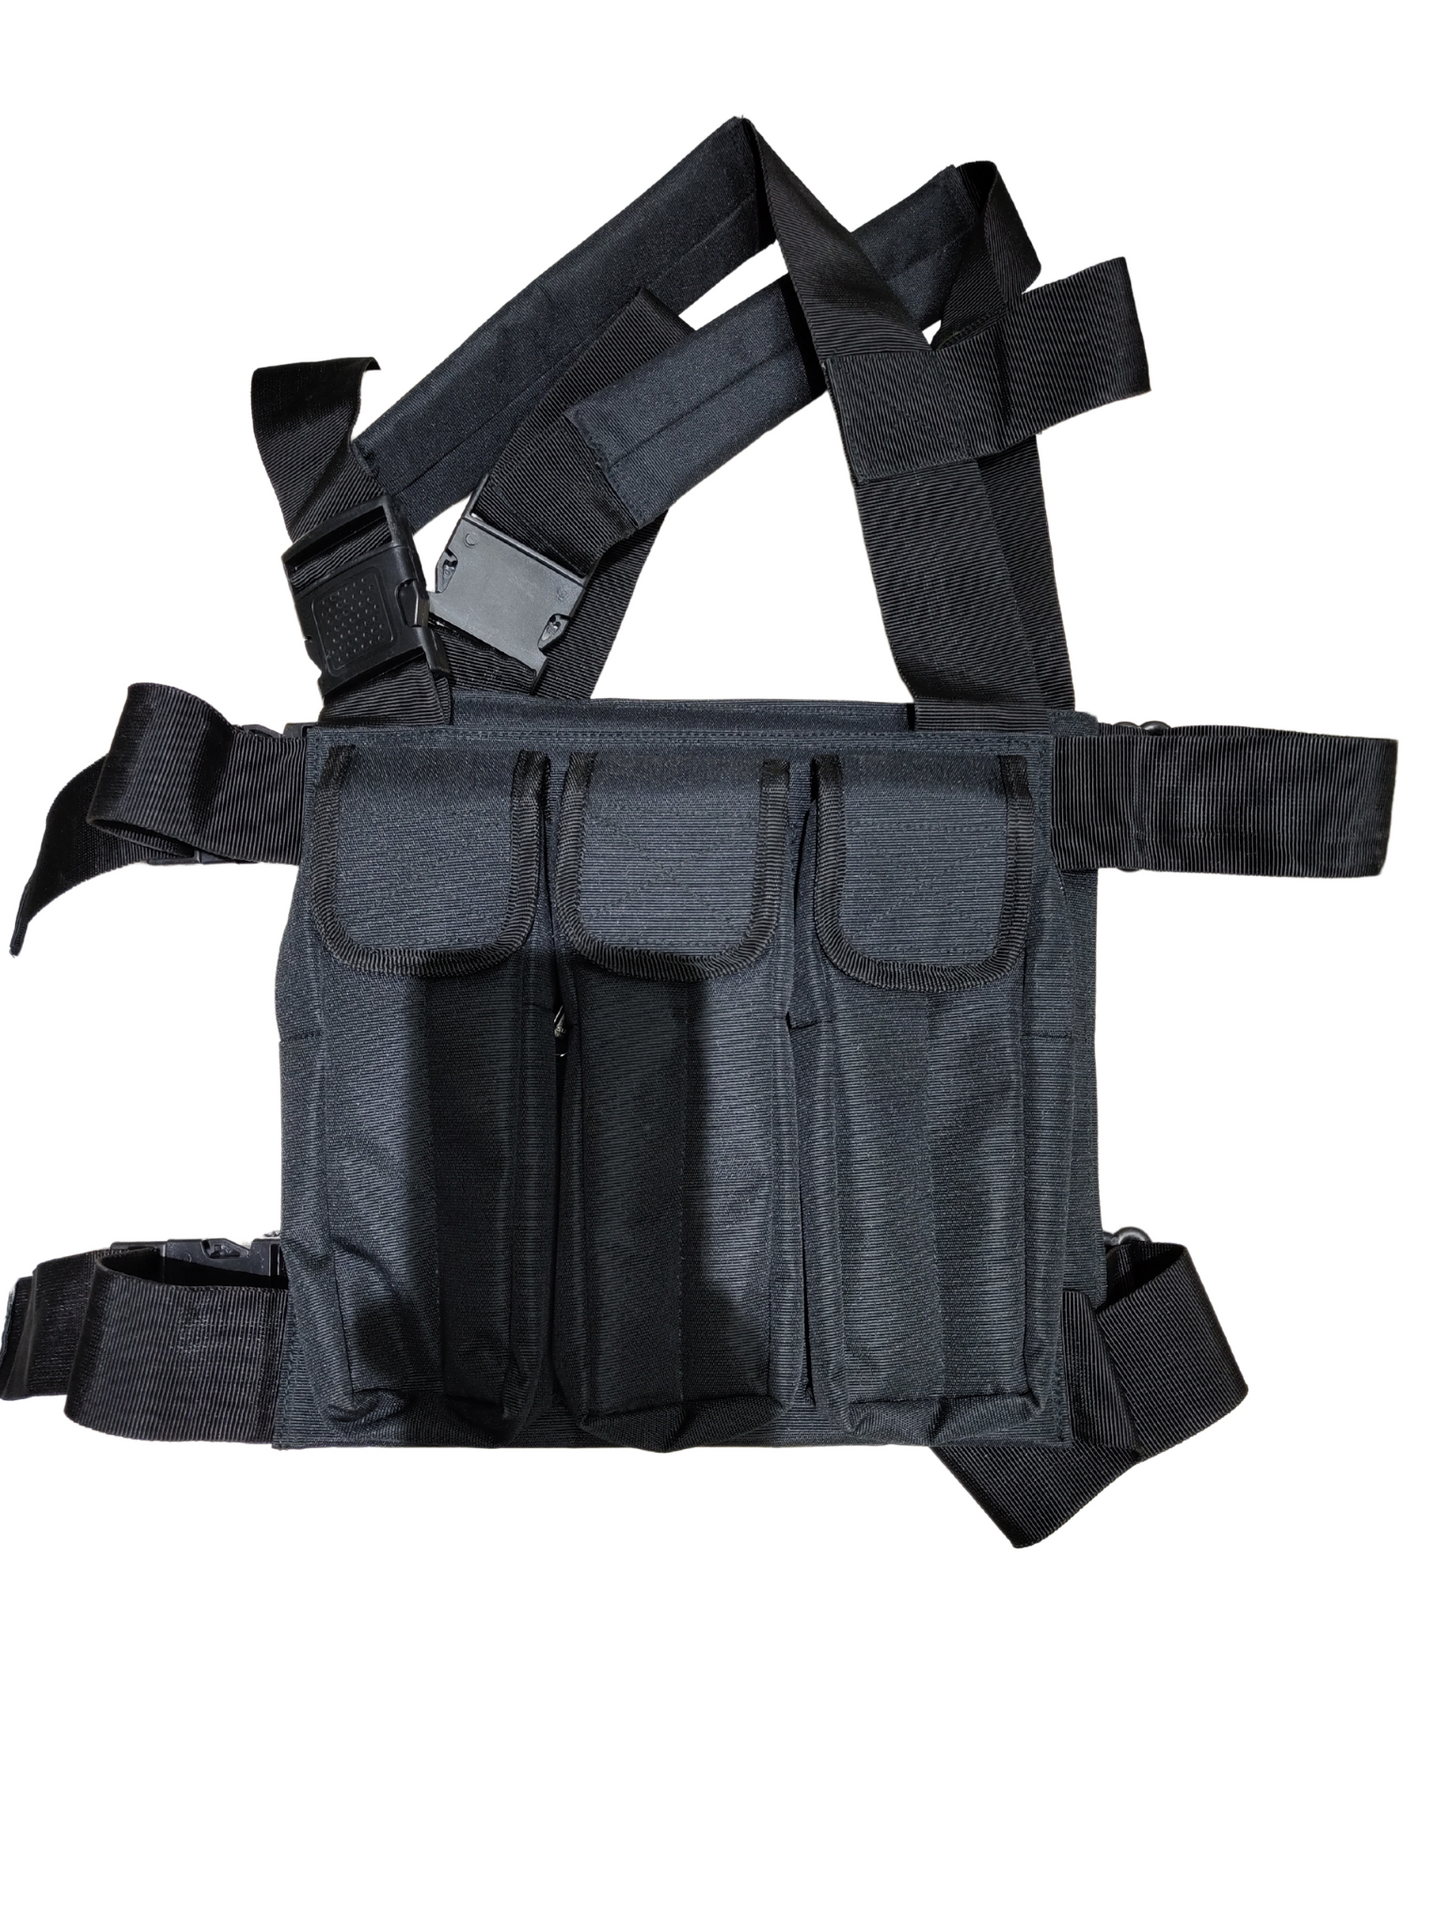 AK47 tactical Vest Pouch With Tricolor Logo - Black